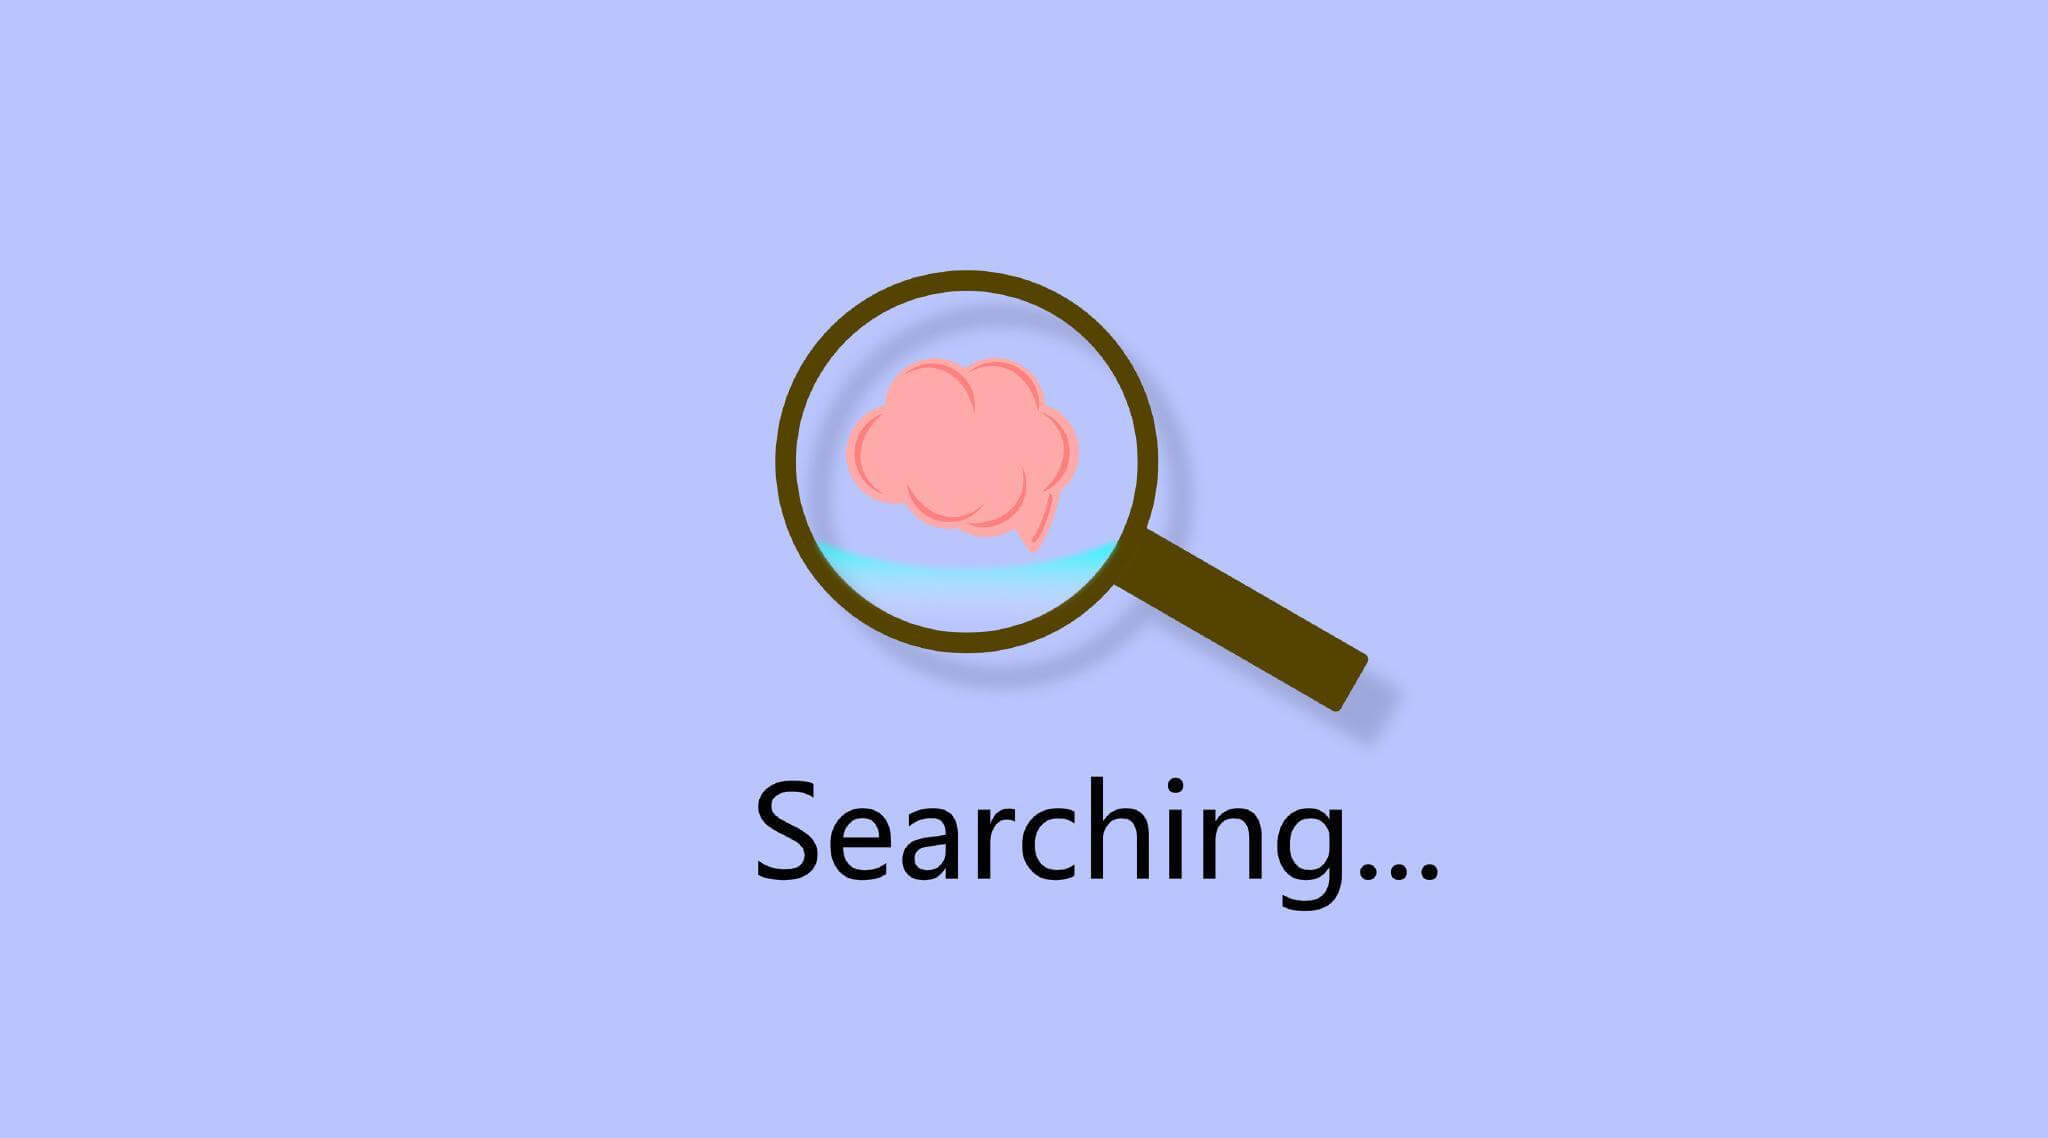 搜索引擎的基本工作：抓取、索引和检索